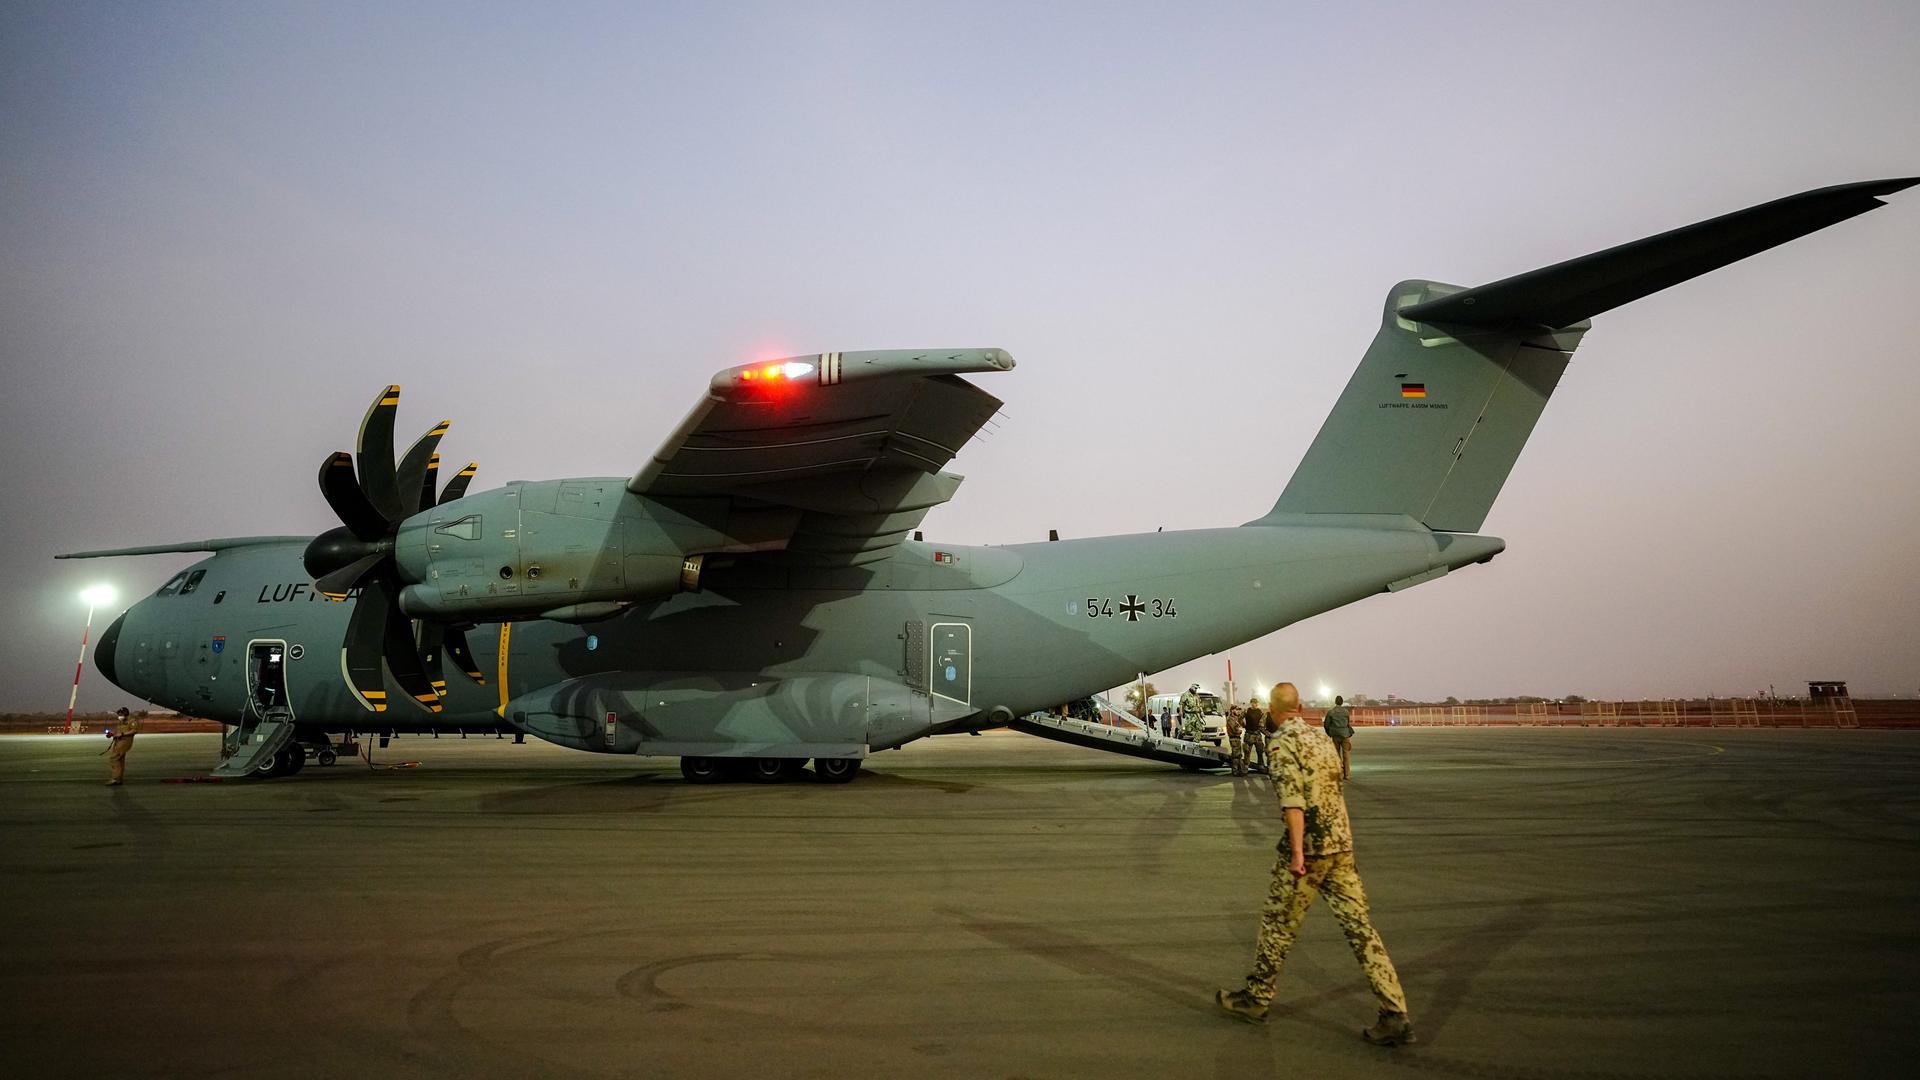 Ein Airbus A400M in der Lackierung der Luftwaffe steht bei Abendlicht auf einem Rollfeld; ein Soldat in khaki-farbener Camouflage läuft auf das Flugzeug zu.